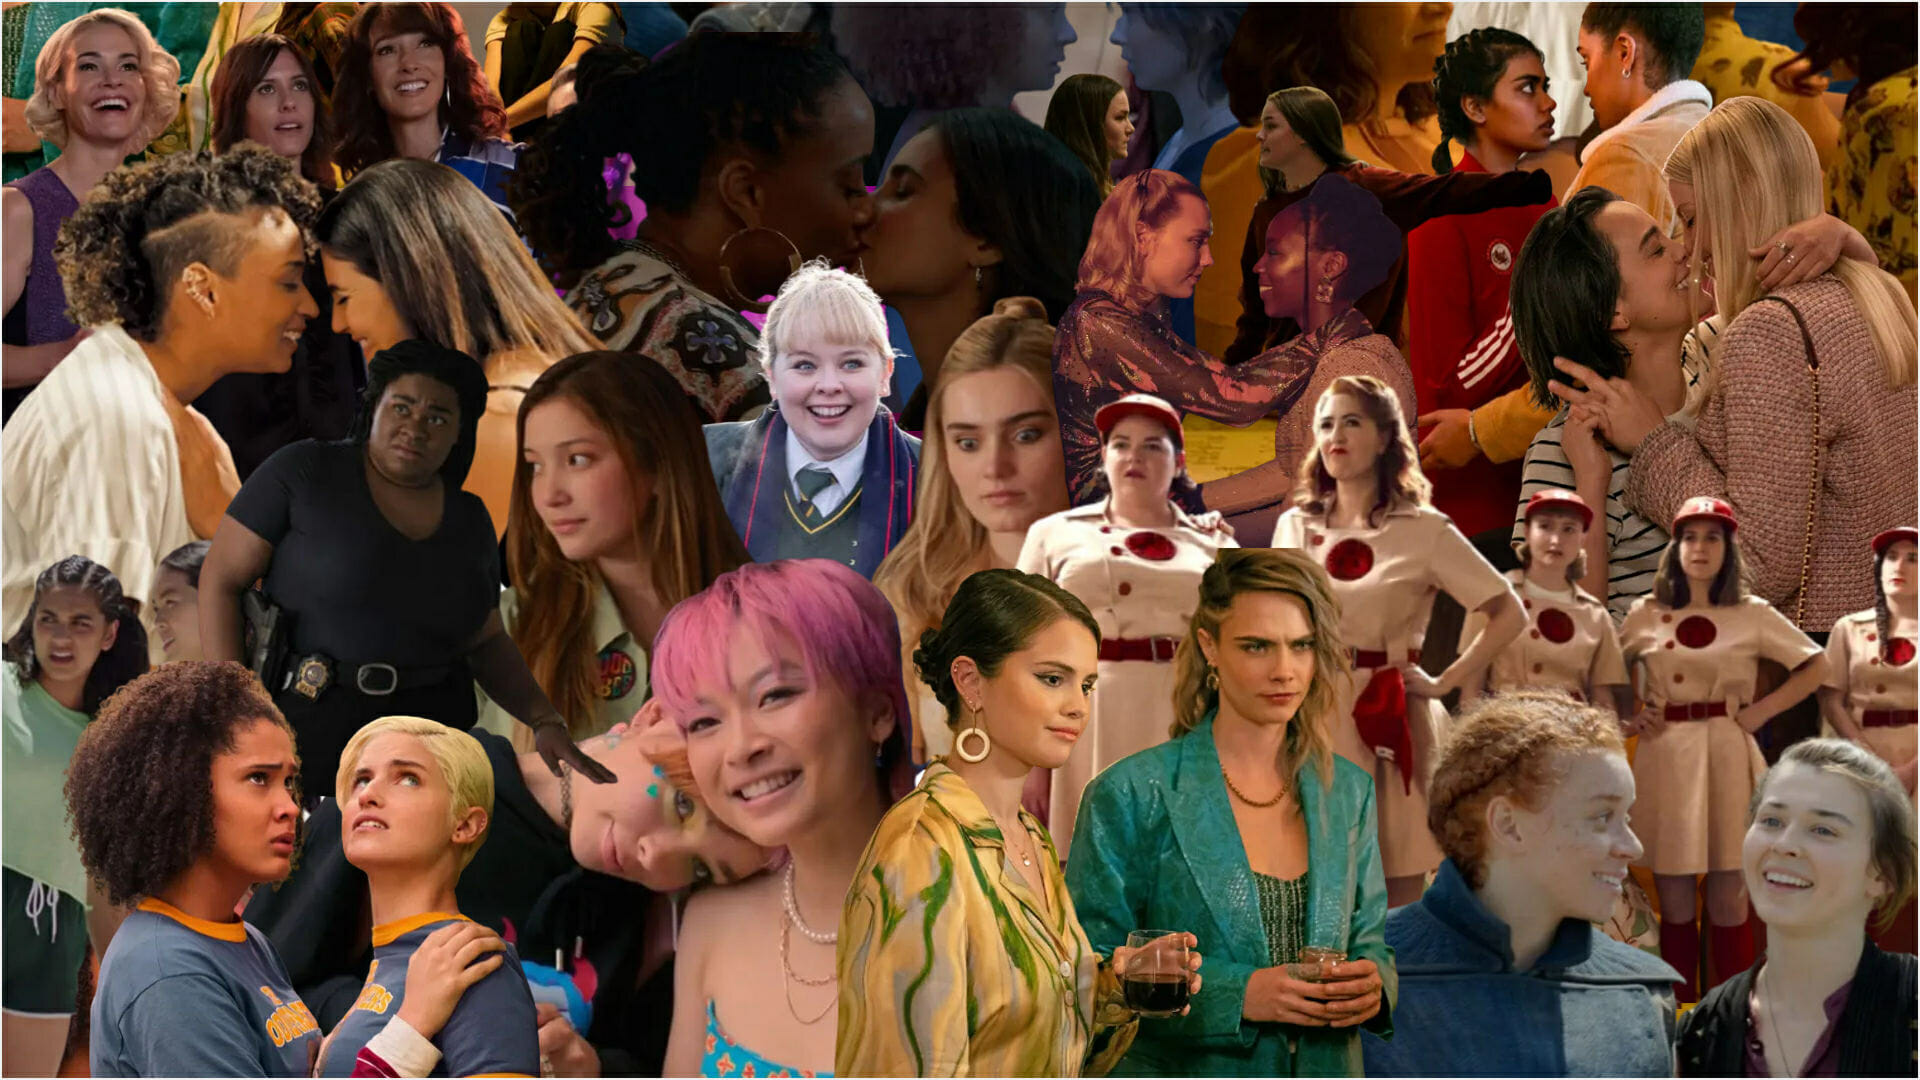 È la settimana della visibilità lesbica! Festeggiate con questi nominati e vincitori dei GLAAD Media Award con personaggi lesbici